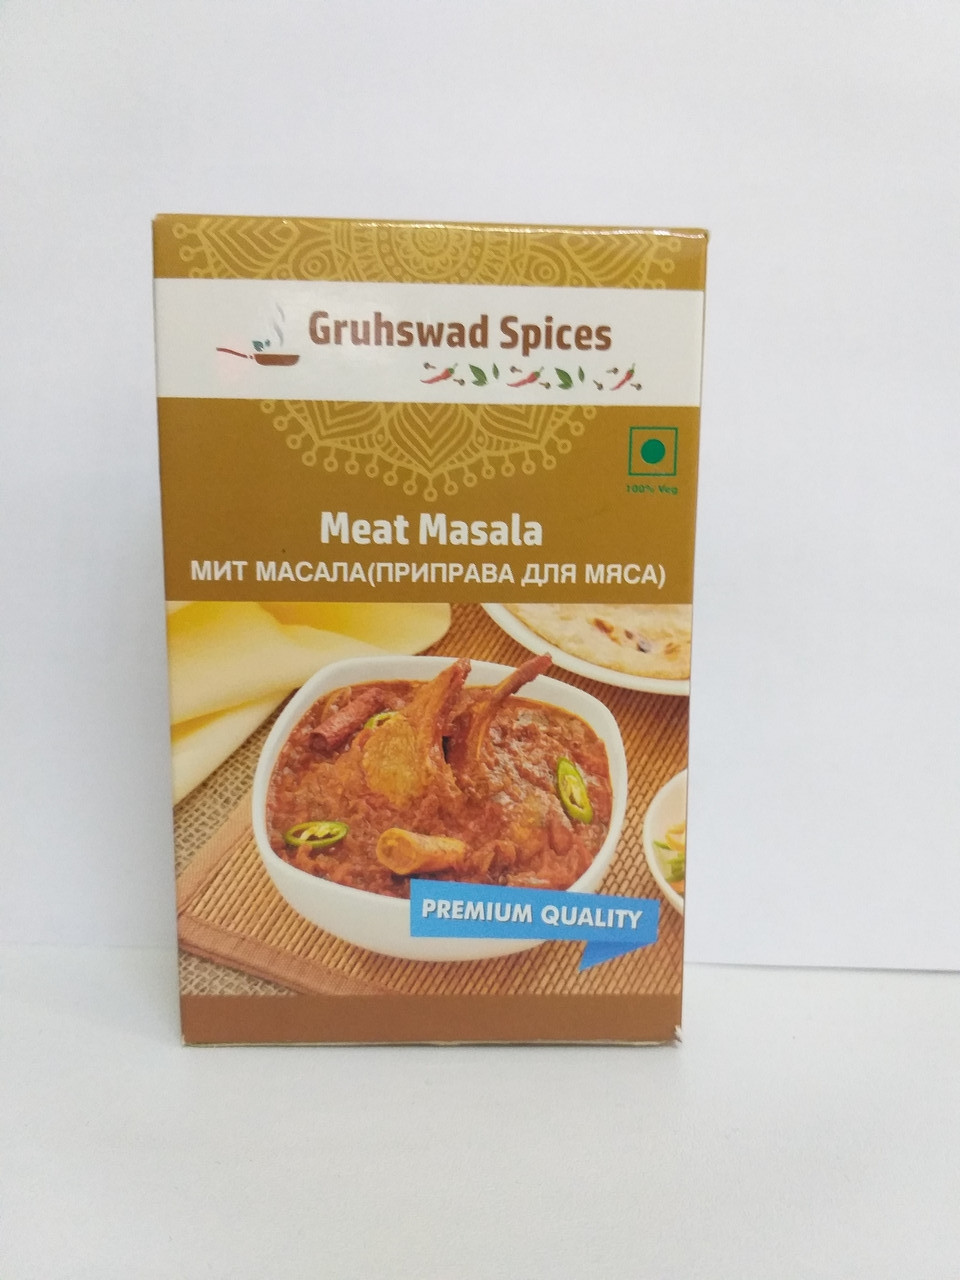 Мит масала, приправа для мяса, 50 гр, Gruhswad Spices, Meat Masala